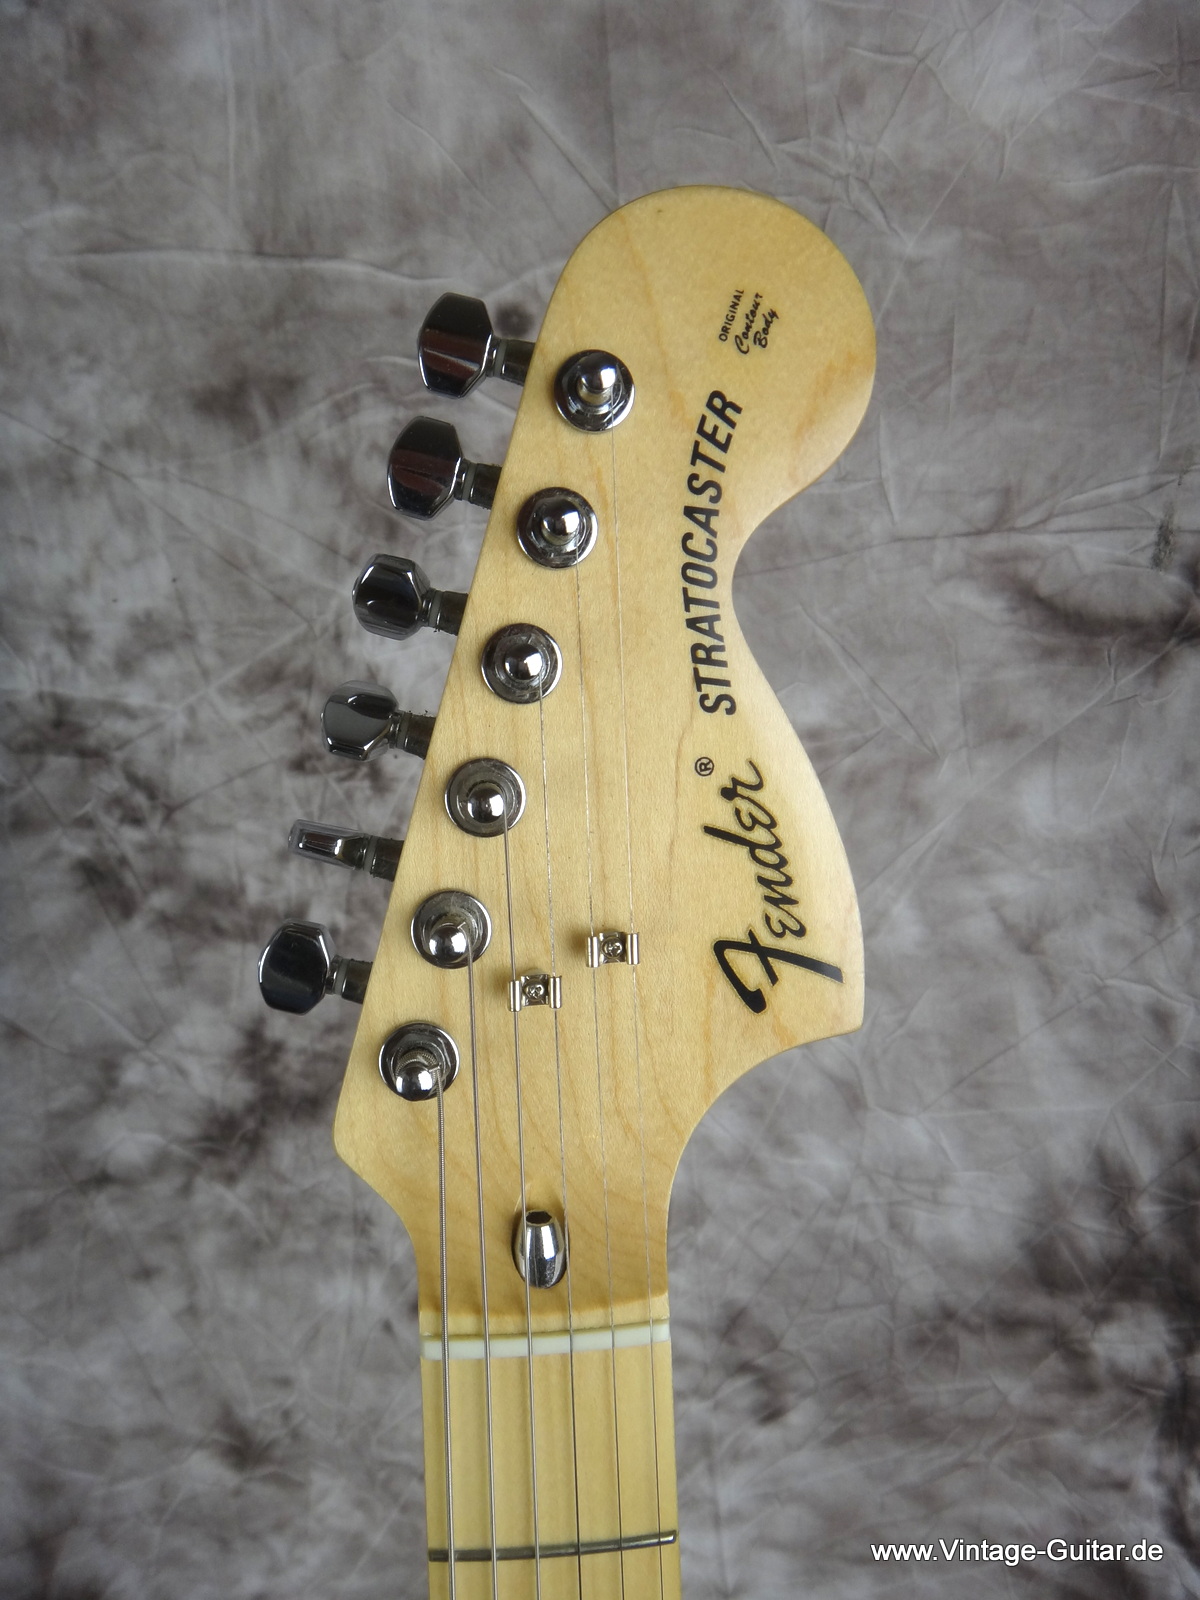 Fender_Stratocaster-70s-Reissue-Japan-natural-1992-005.JPG